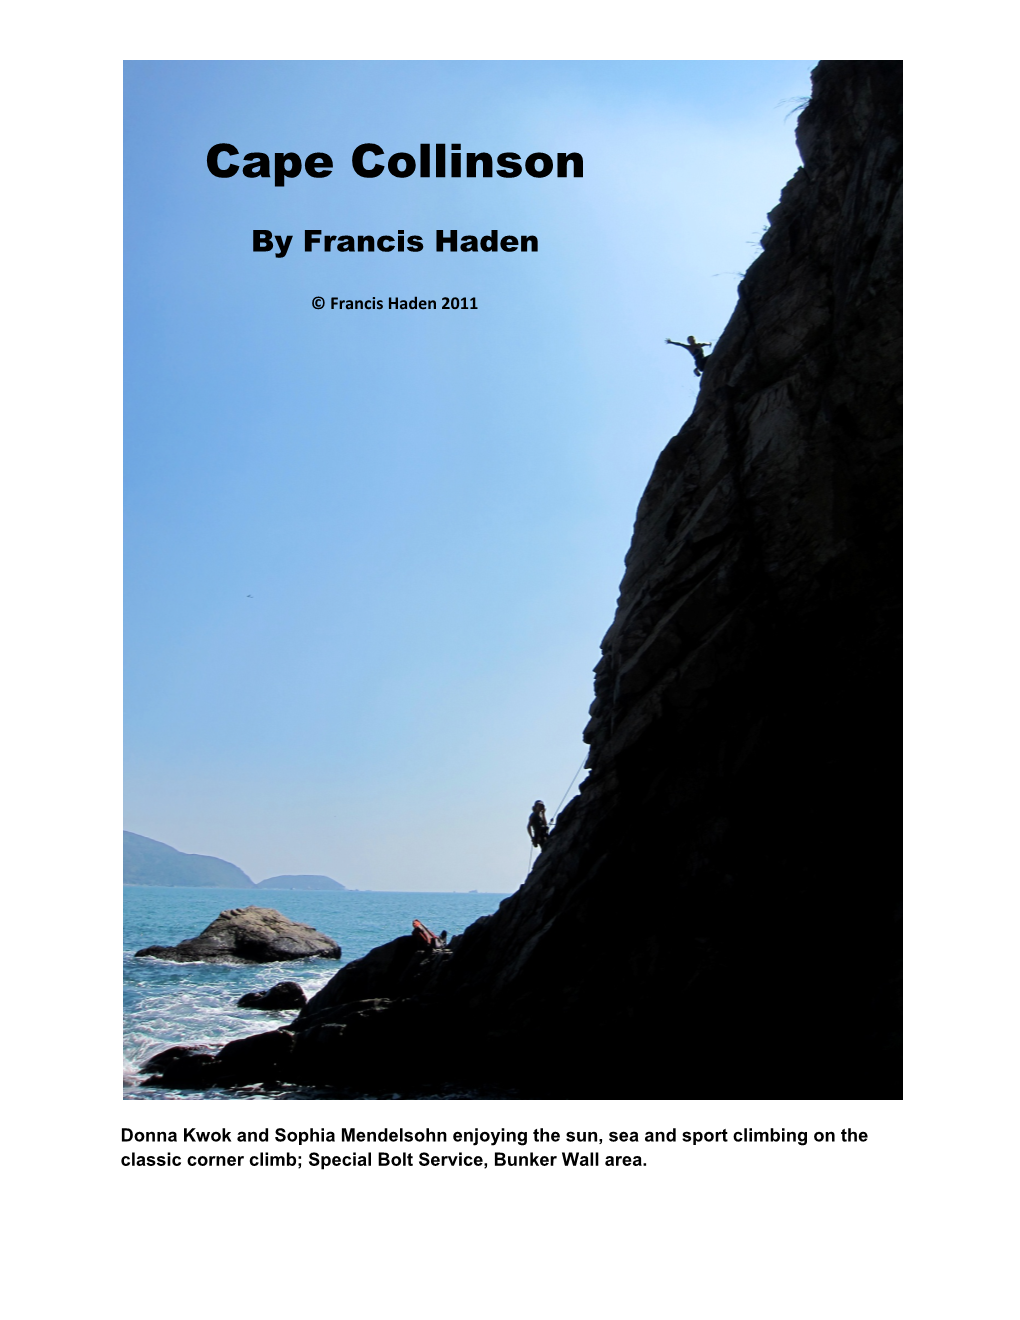 Cape Collinson